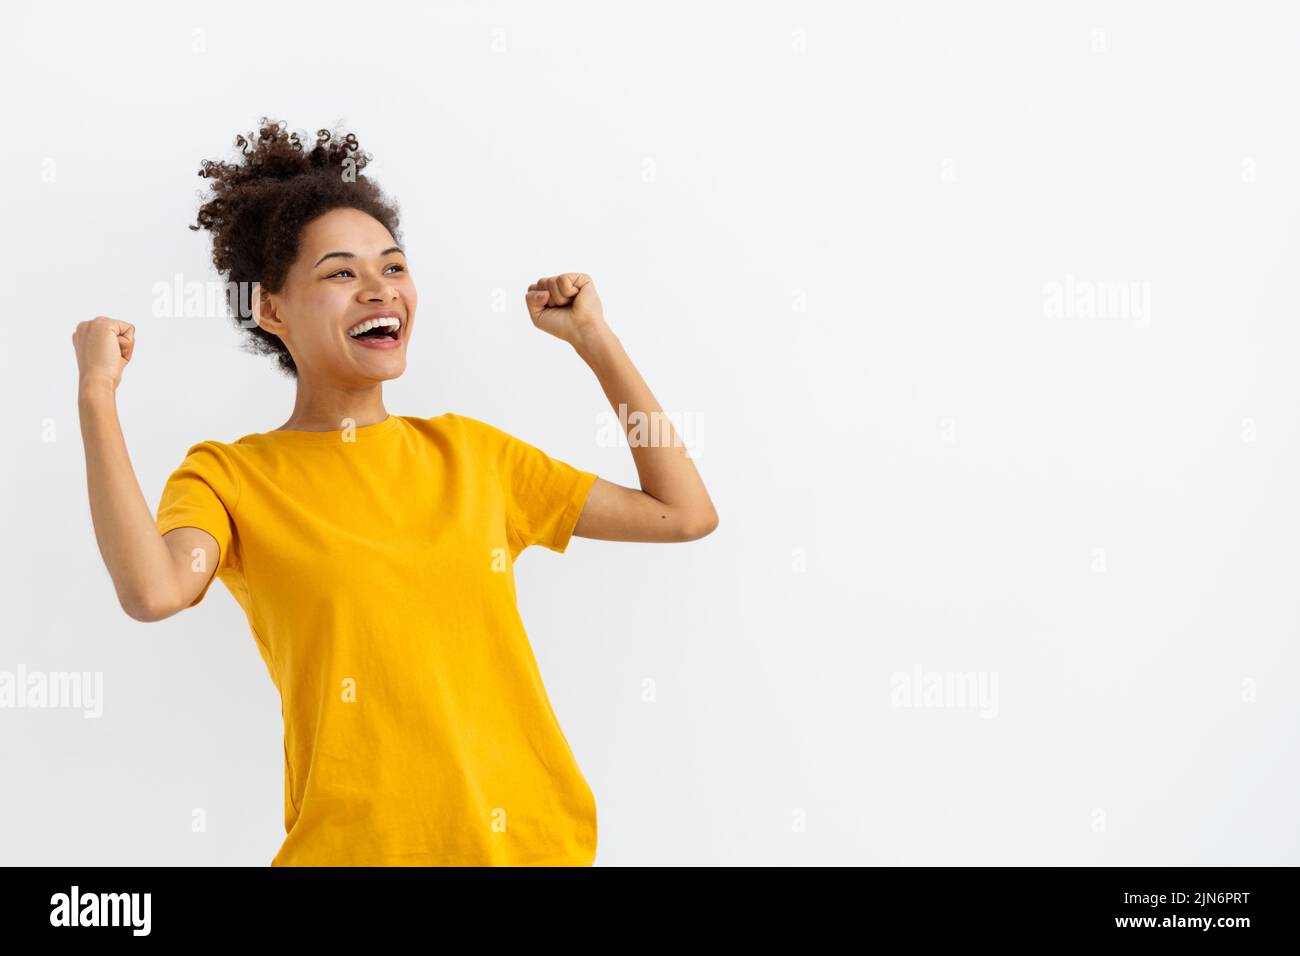 Porträt der aufgeregt junge Frau haben gute Laune Fühlen Sie sich glücklich aufgeregt Emotion auf einem weißen Hintergrund Stockfoto